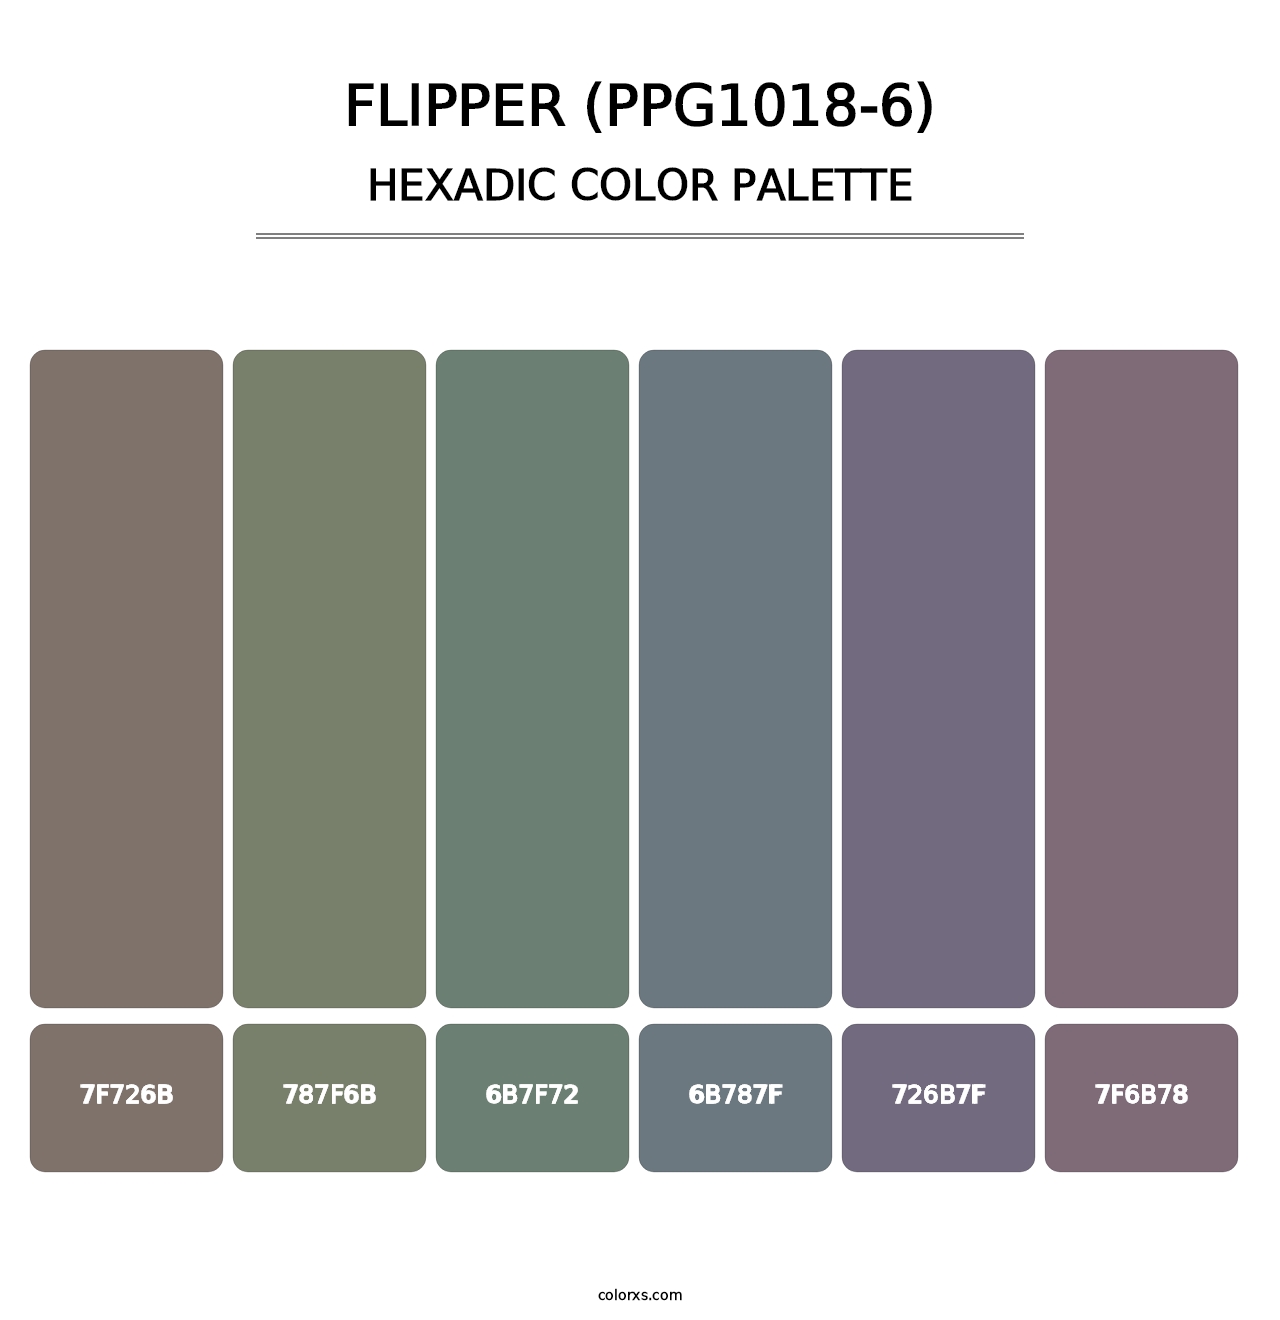 Flipper (PPG1018-6) - Hexadic Color Palette